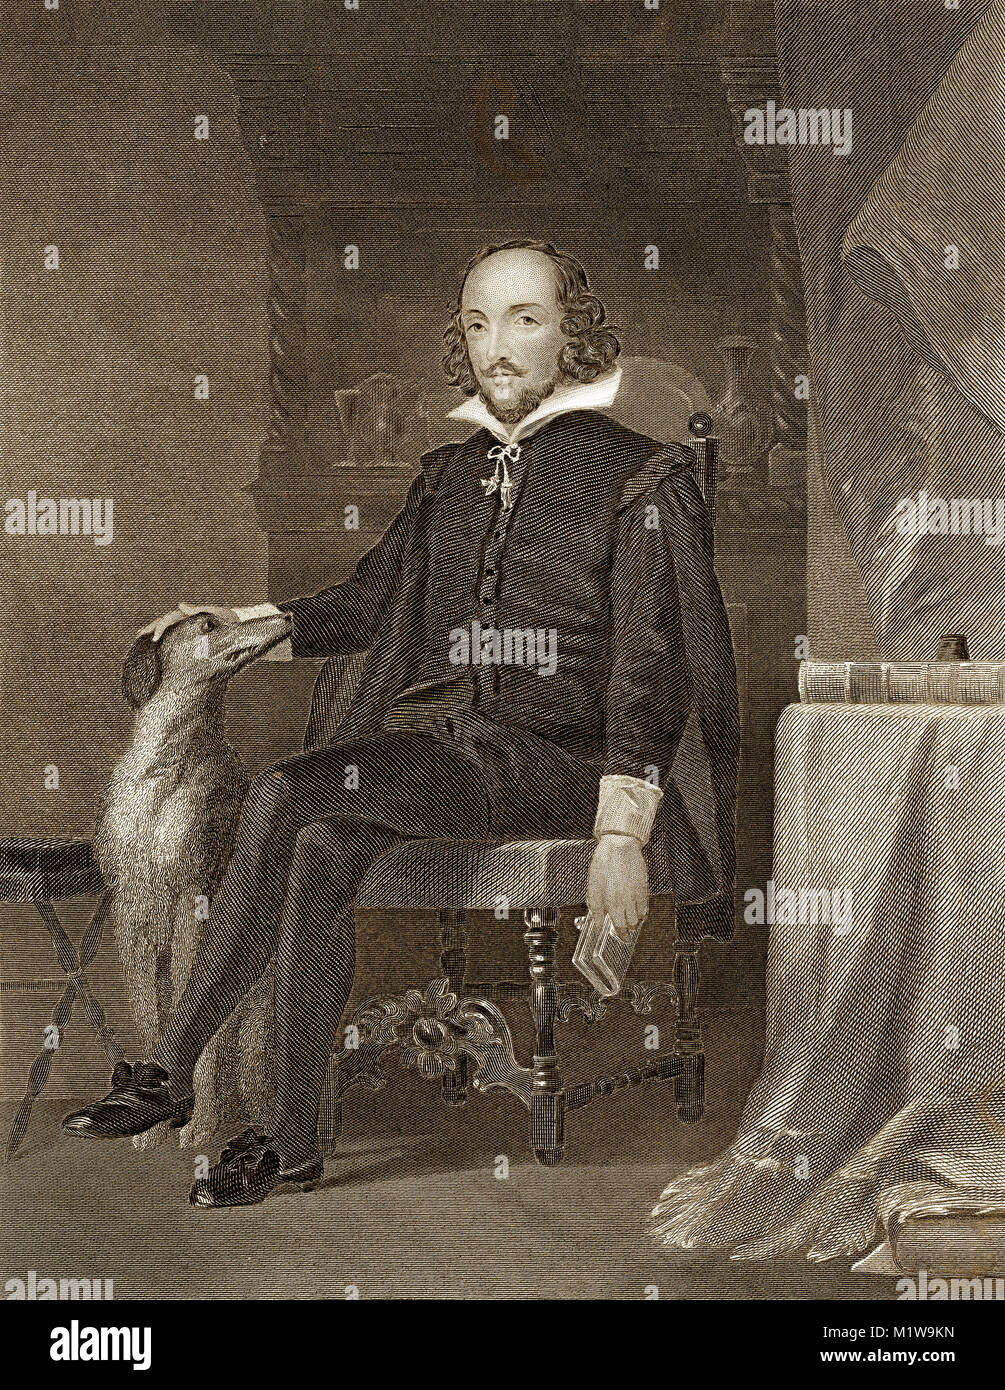 Grabado de William Shakespeare. Desde el Ilustrado obras completas de Shakespeare, 1878 Foto de stock